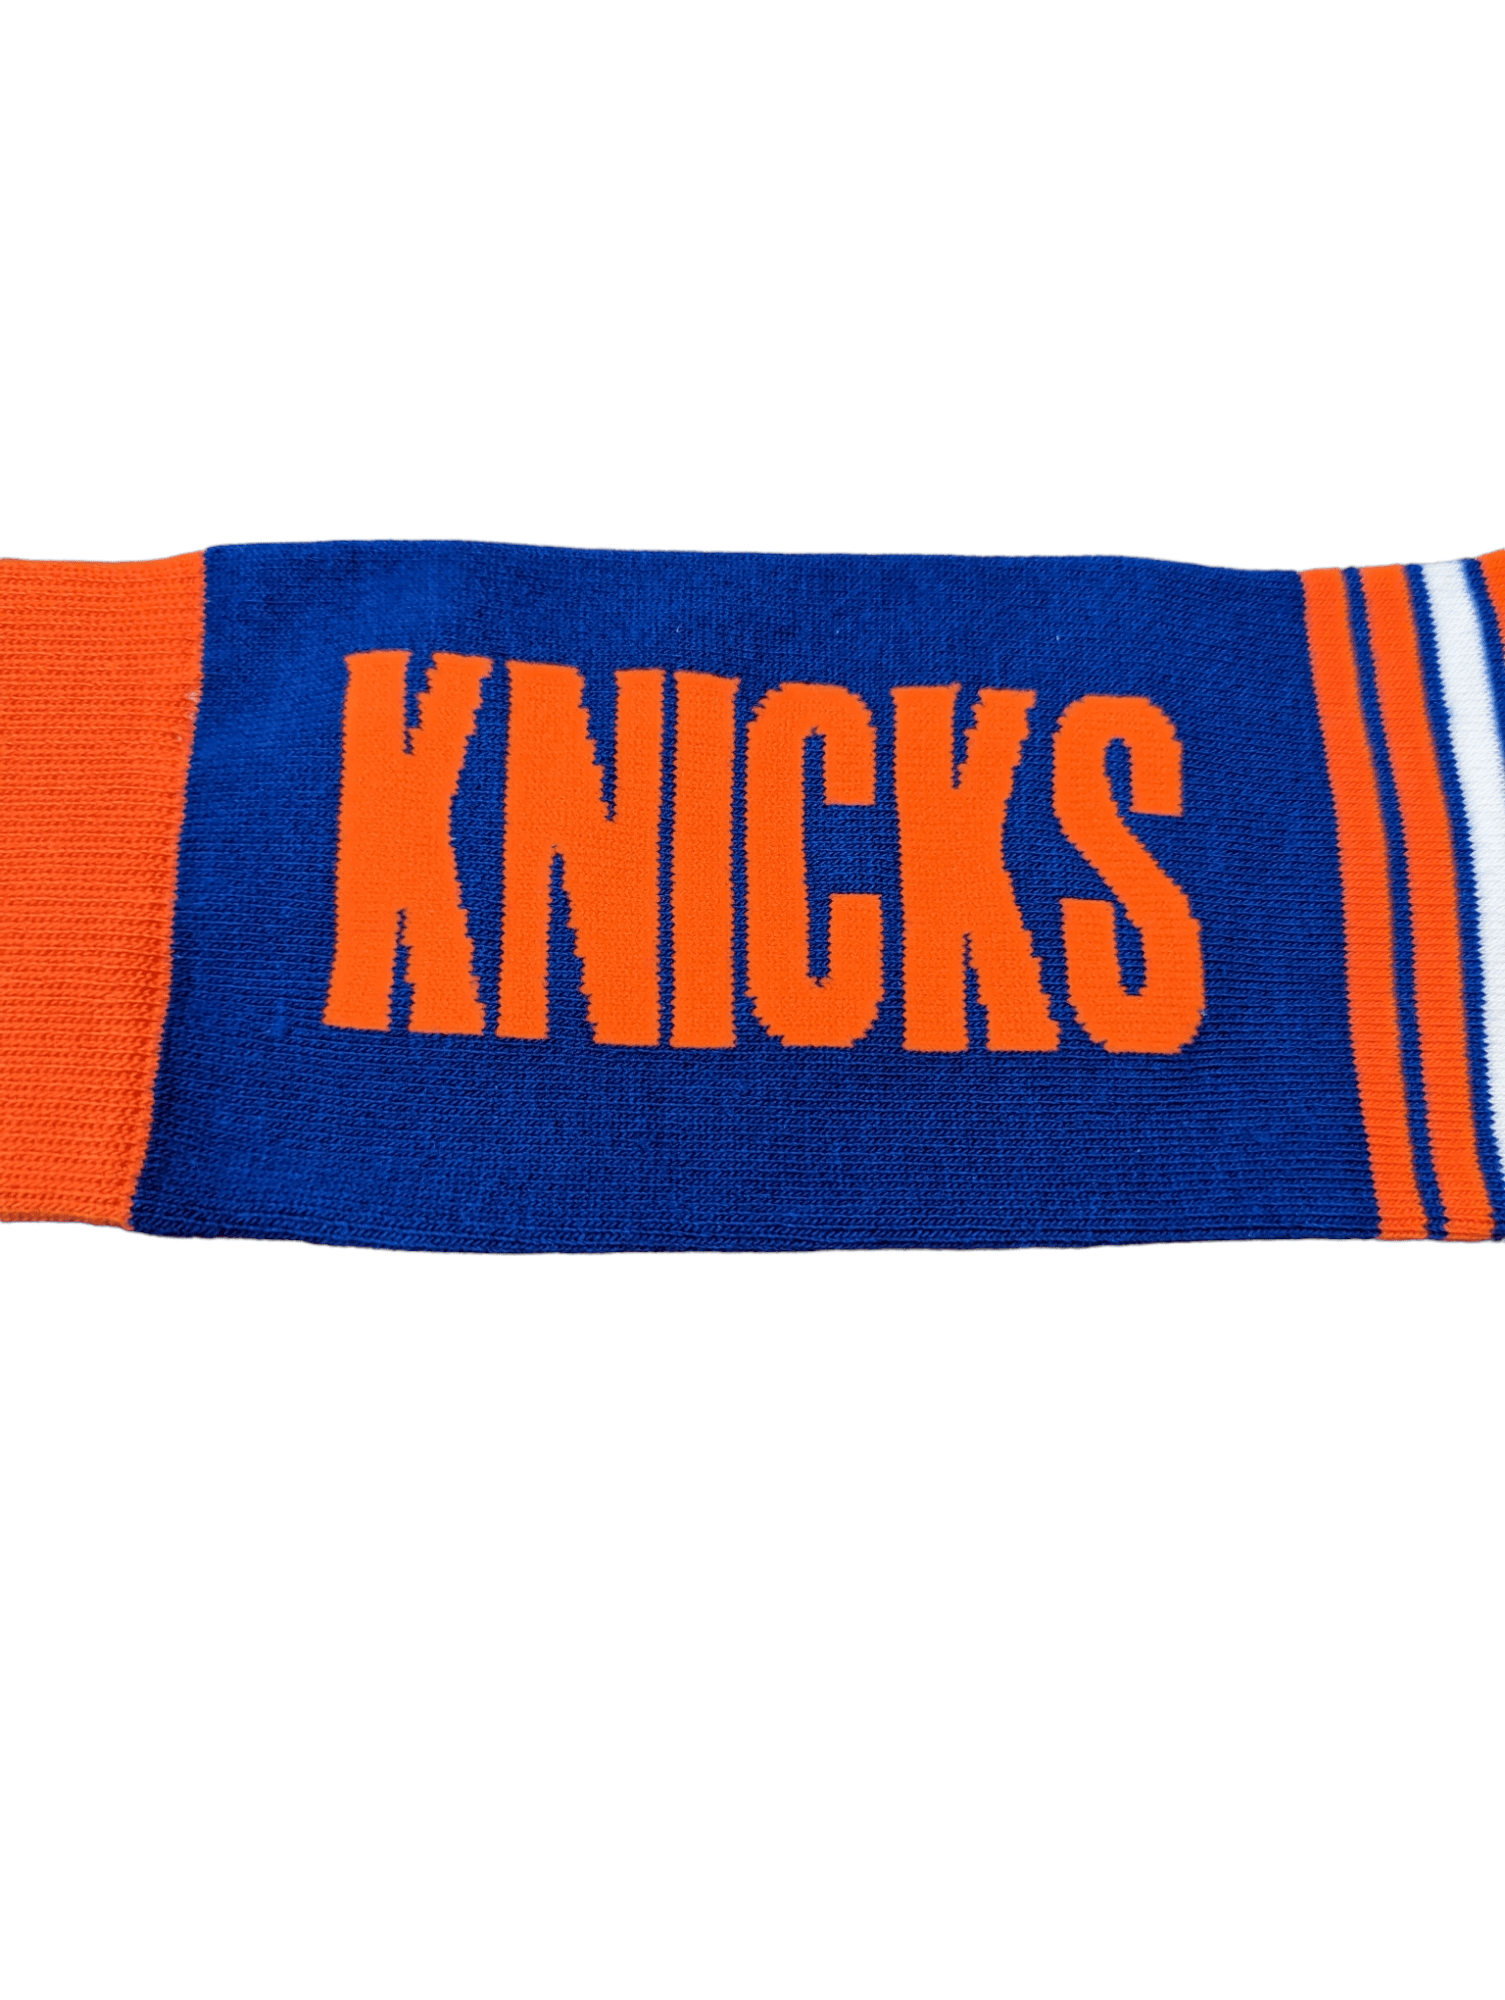 For Bare Feet Socks New York Knicks Go Team Socks